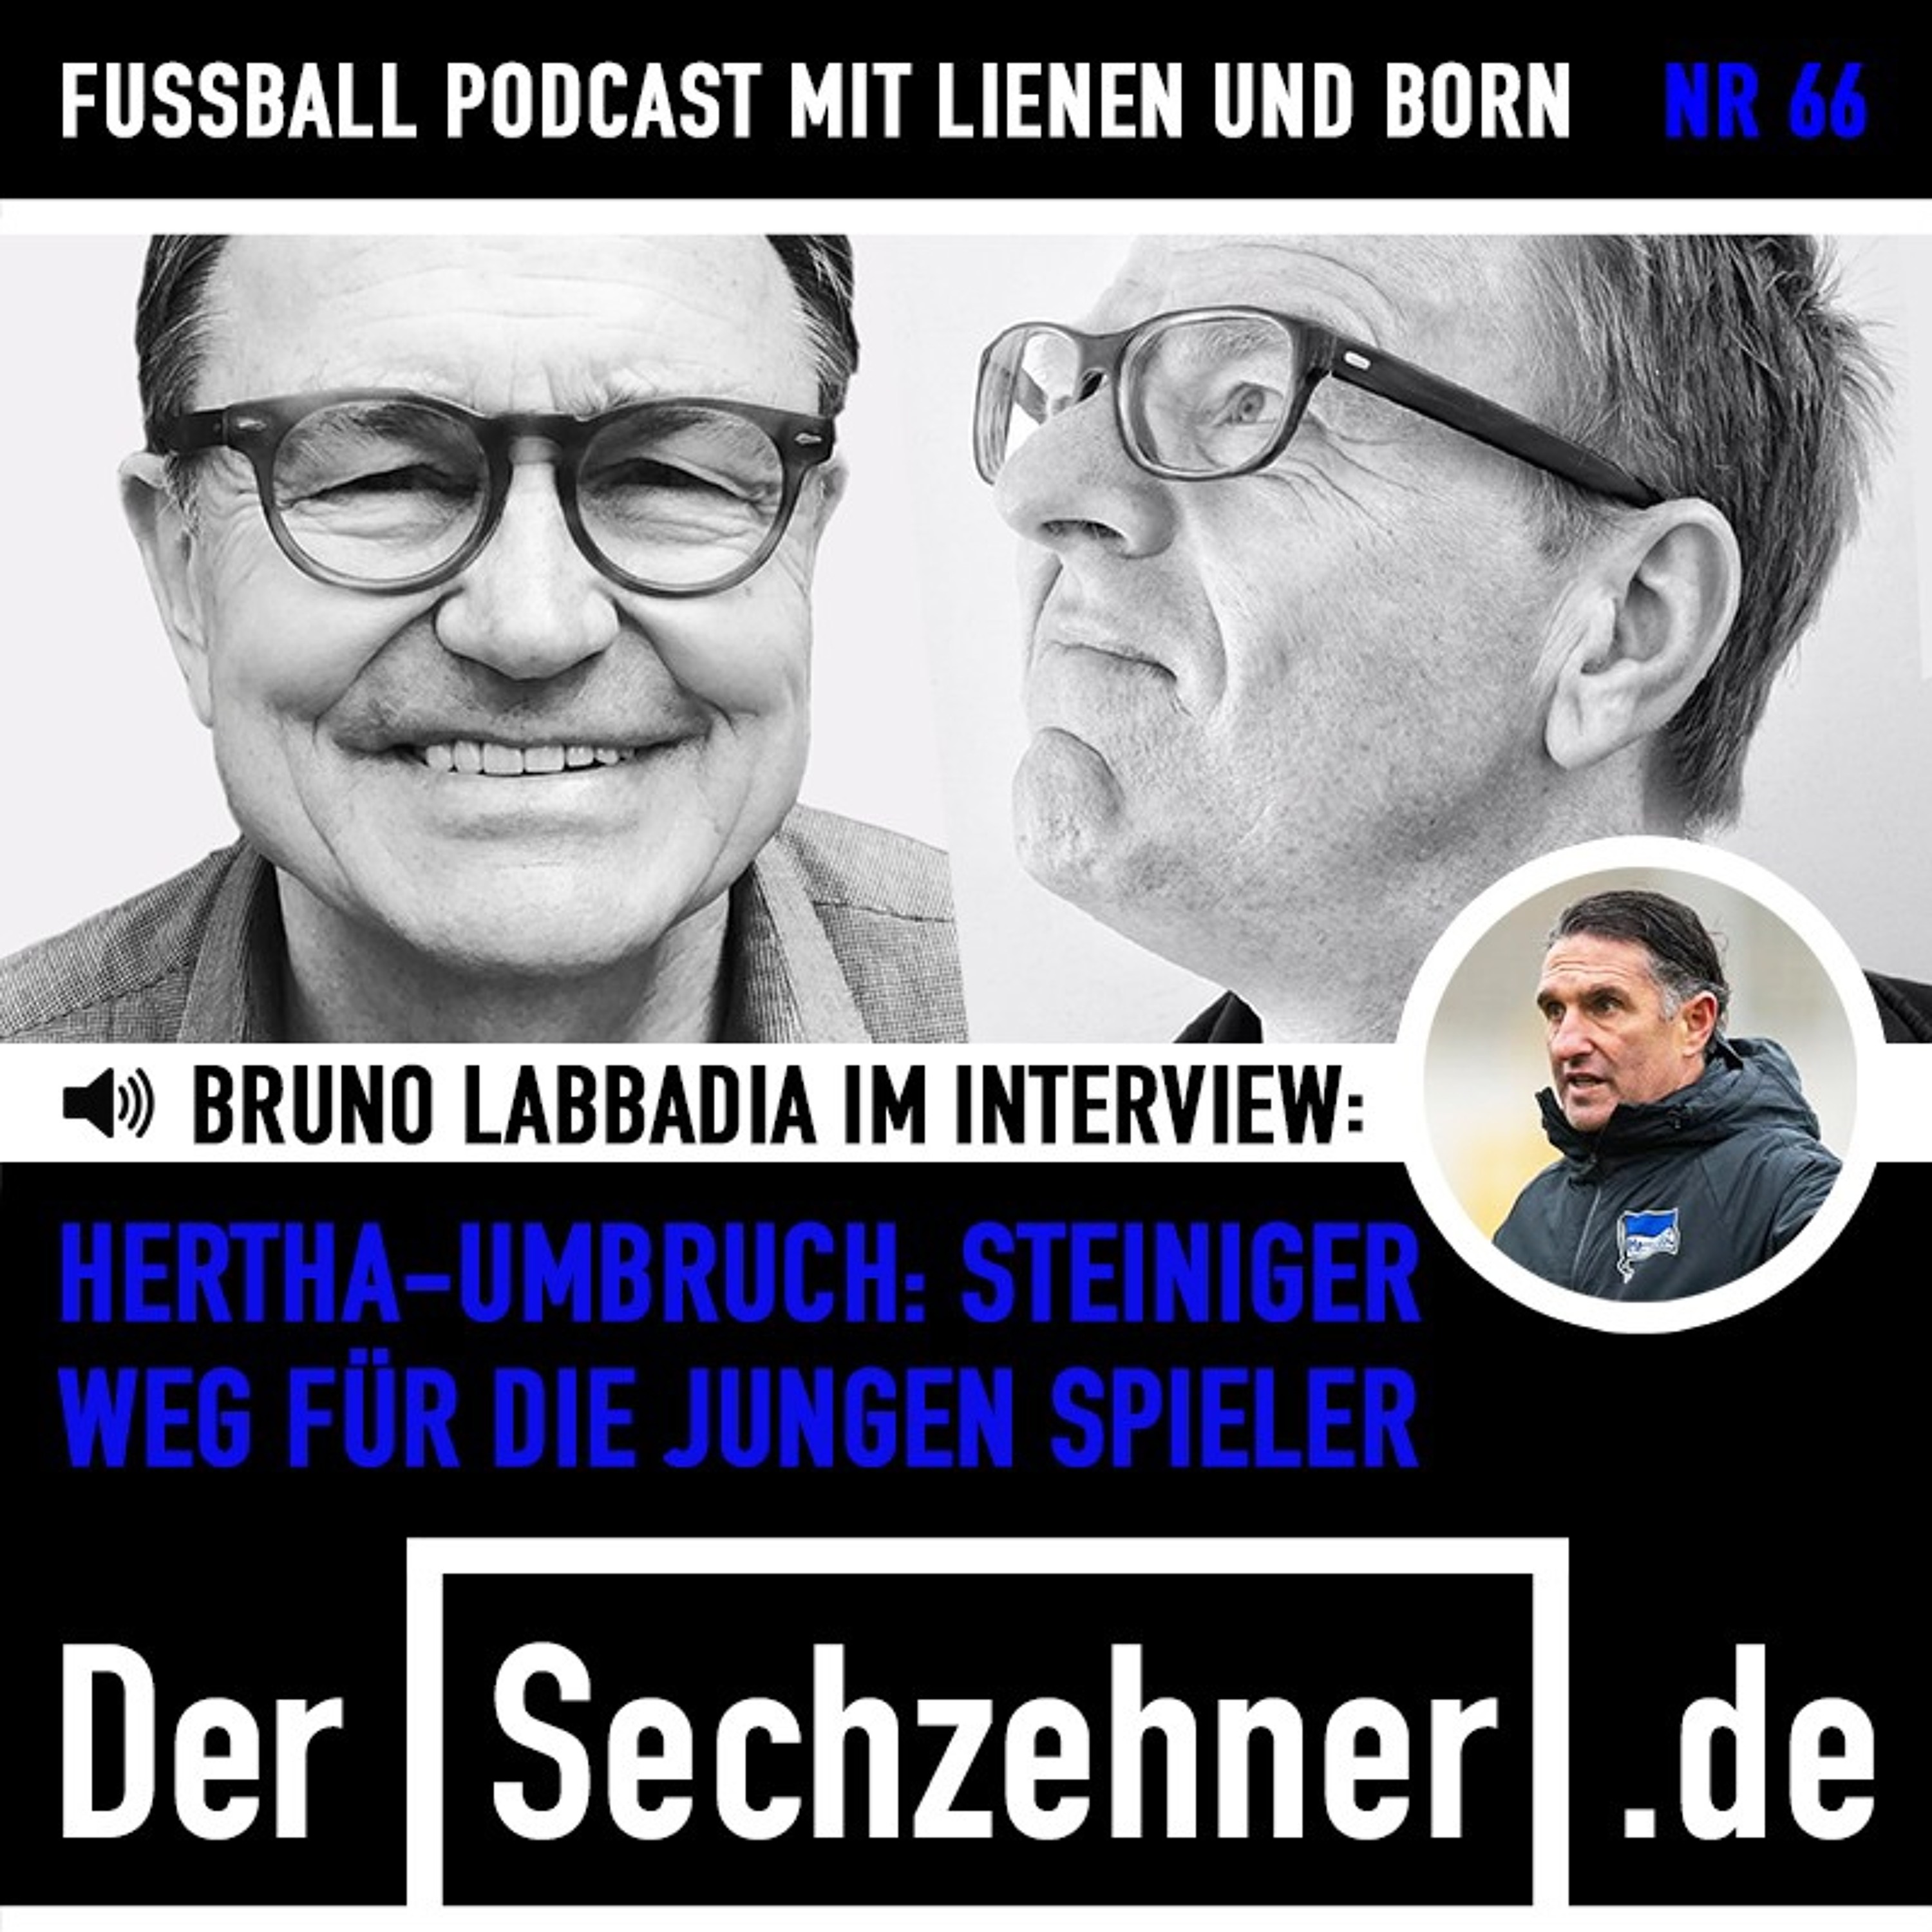 Schalke-Chaos, Moukoko-Trubel und Labbadia im Gespräch: Der Sechzehner No. 66